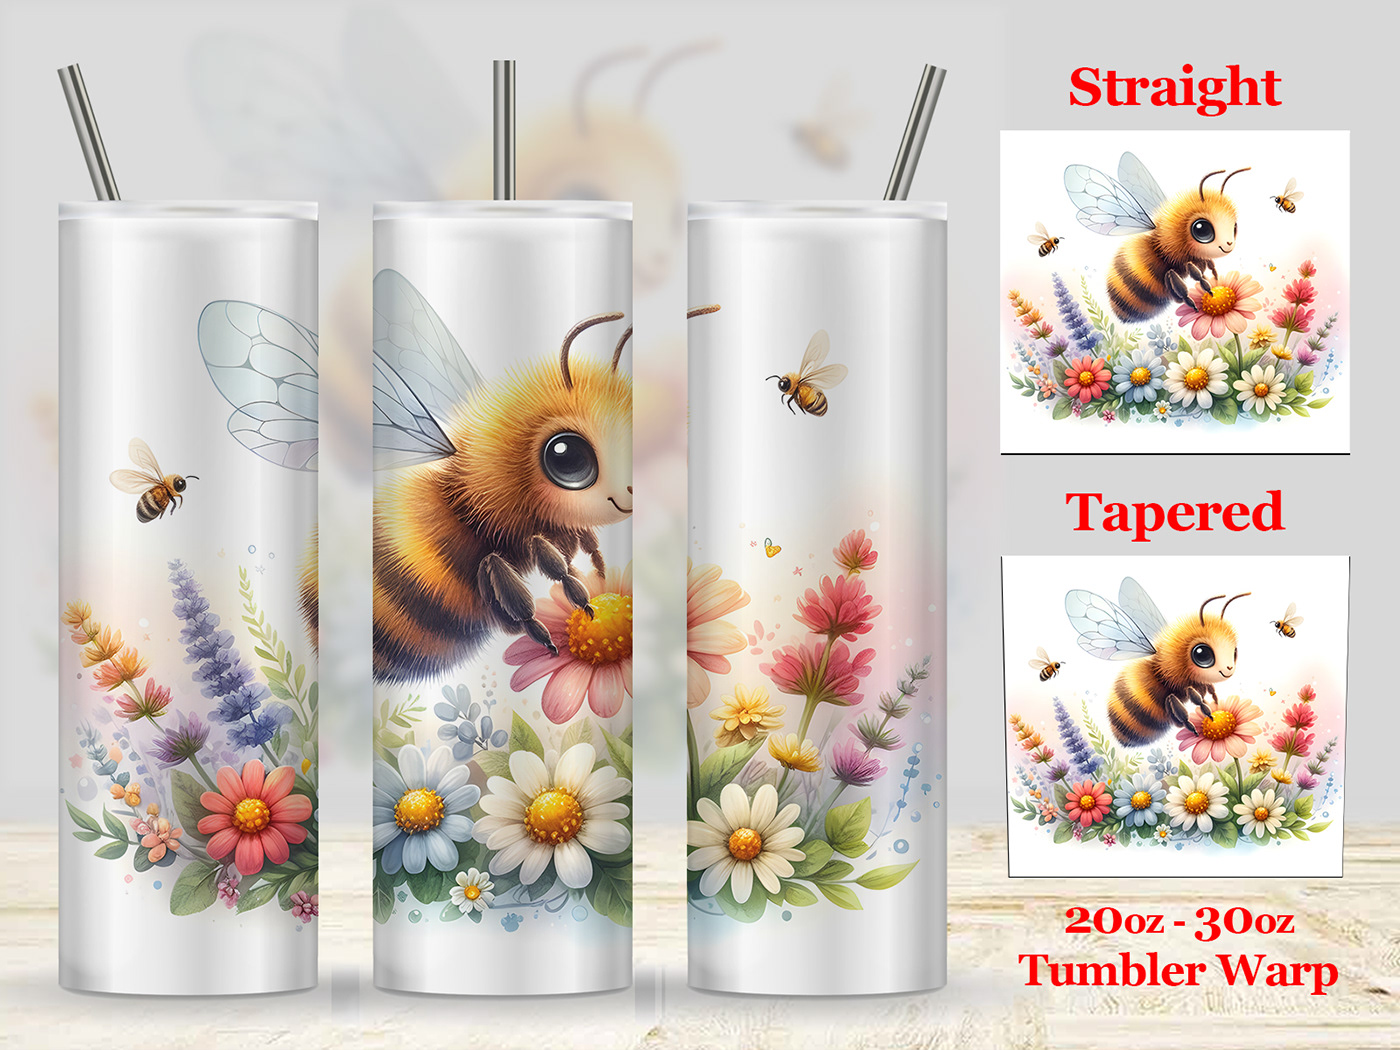 Packaging productdesign tumbler tumbler mockup tumbler sublimation packingdesign tumbler design